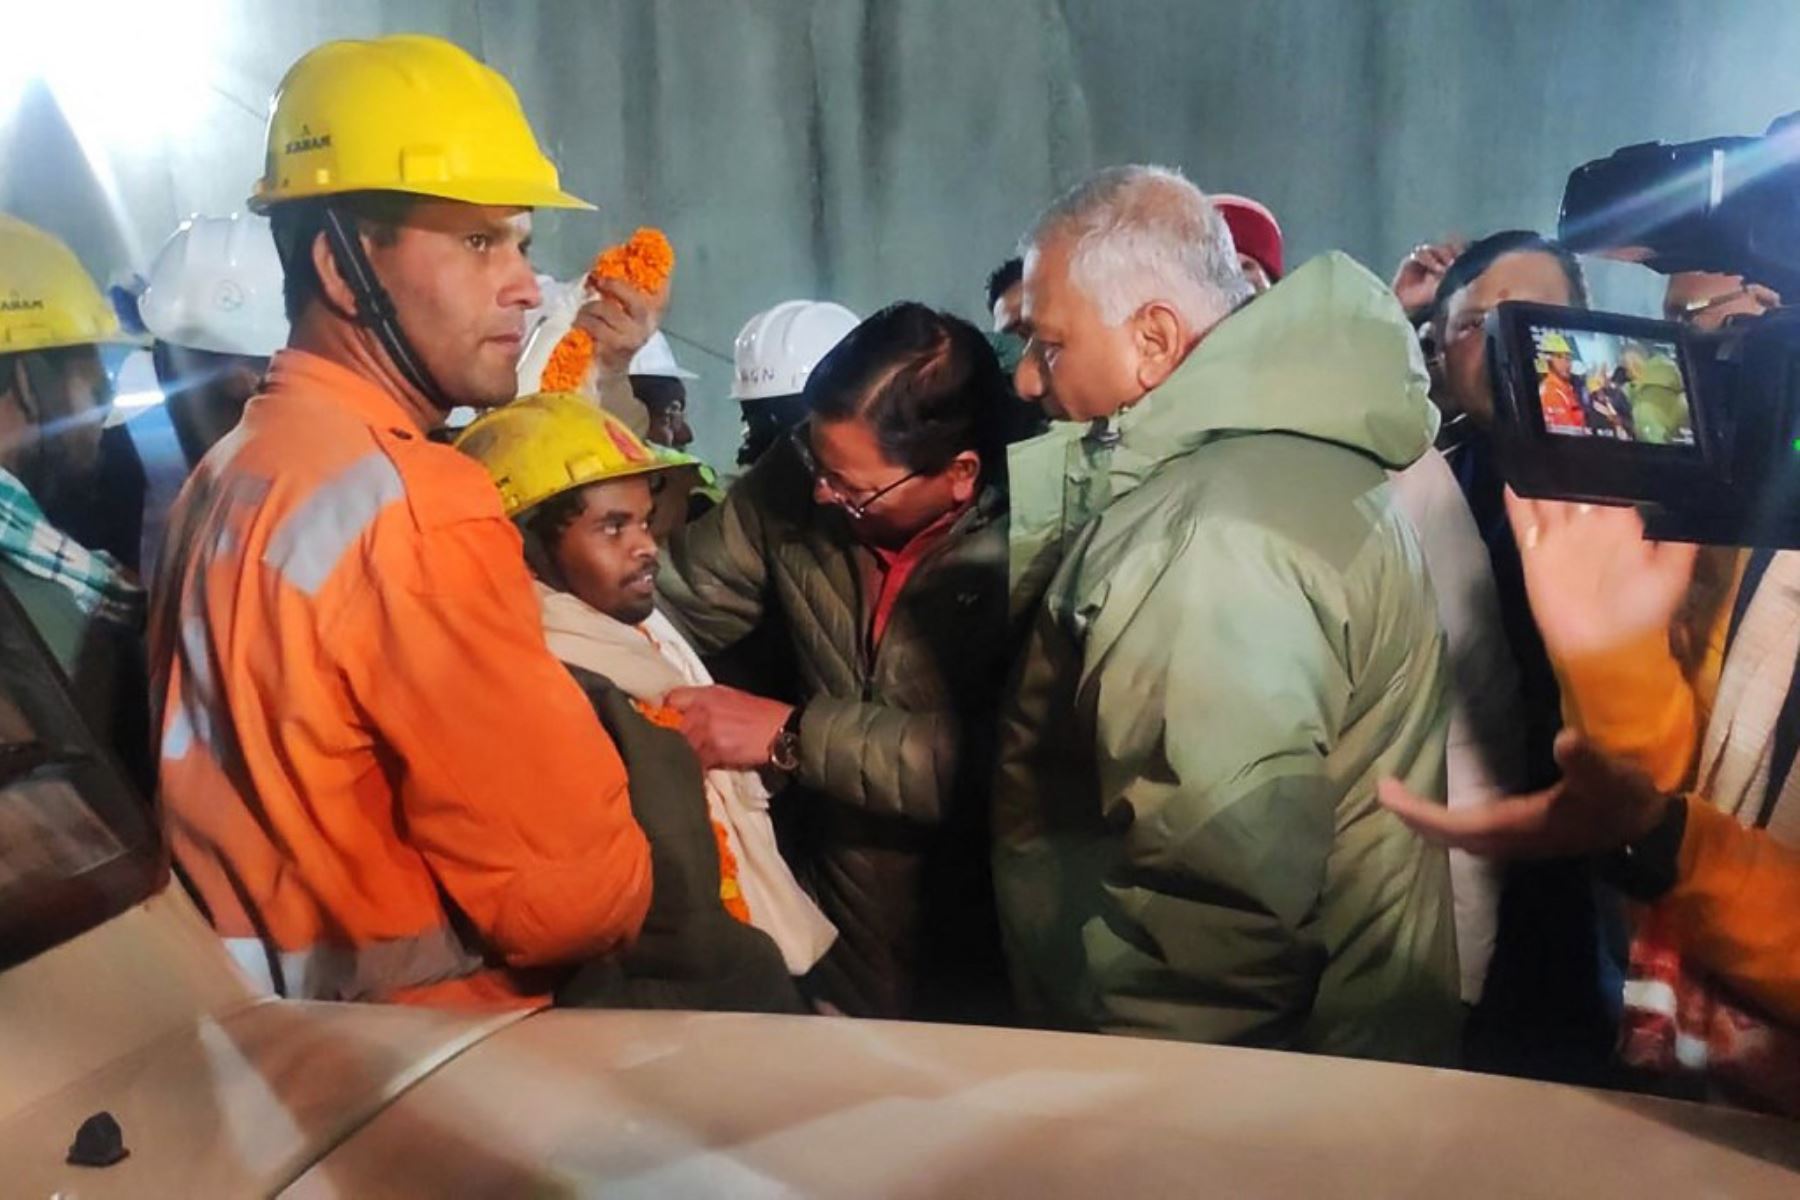 Rescatistas comenzaron a sacar al primero de los 41 hombres atrapados durante 17 días detrás de toneladas de tierra dentro de un túnel de carretera en el Himalaya, después de una operación de ingeniería maratónica para liberarlos. Foto: AFP